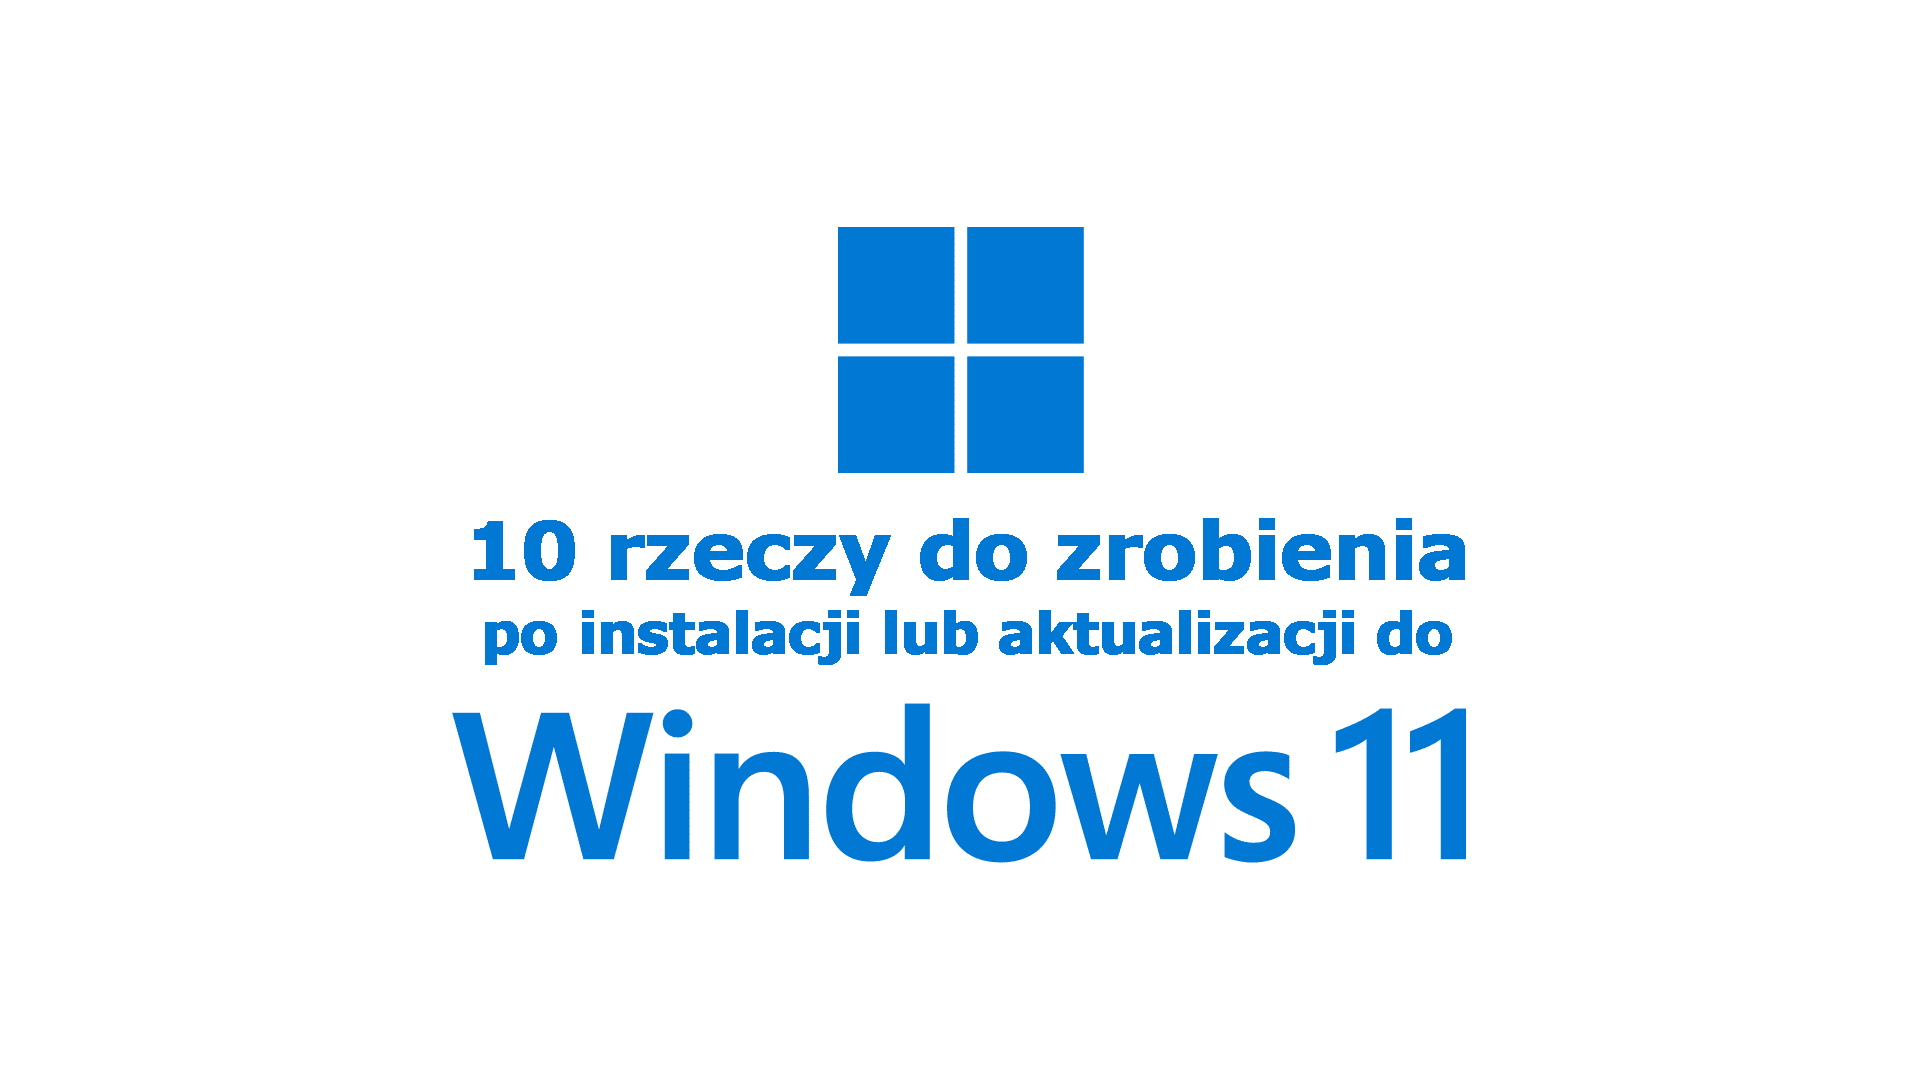 10 rzeczy do zrobienia po instalacji/aktualizacji do Windows 11 (+1)